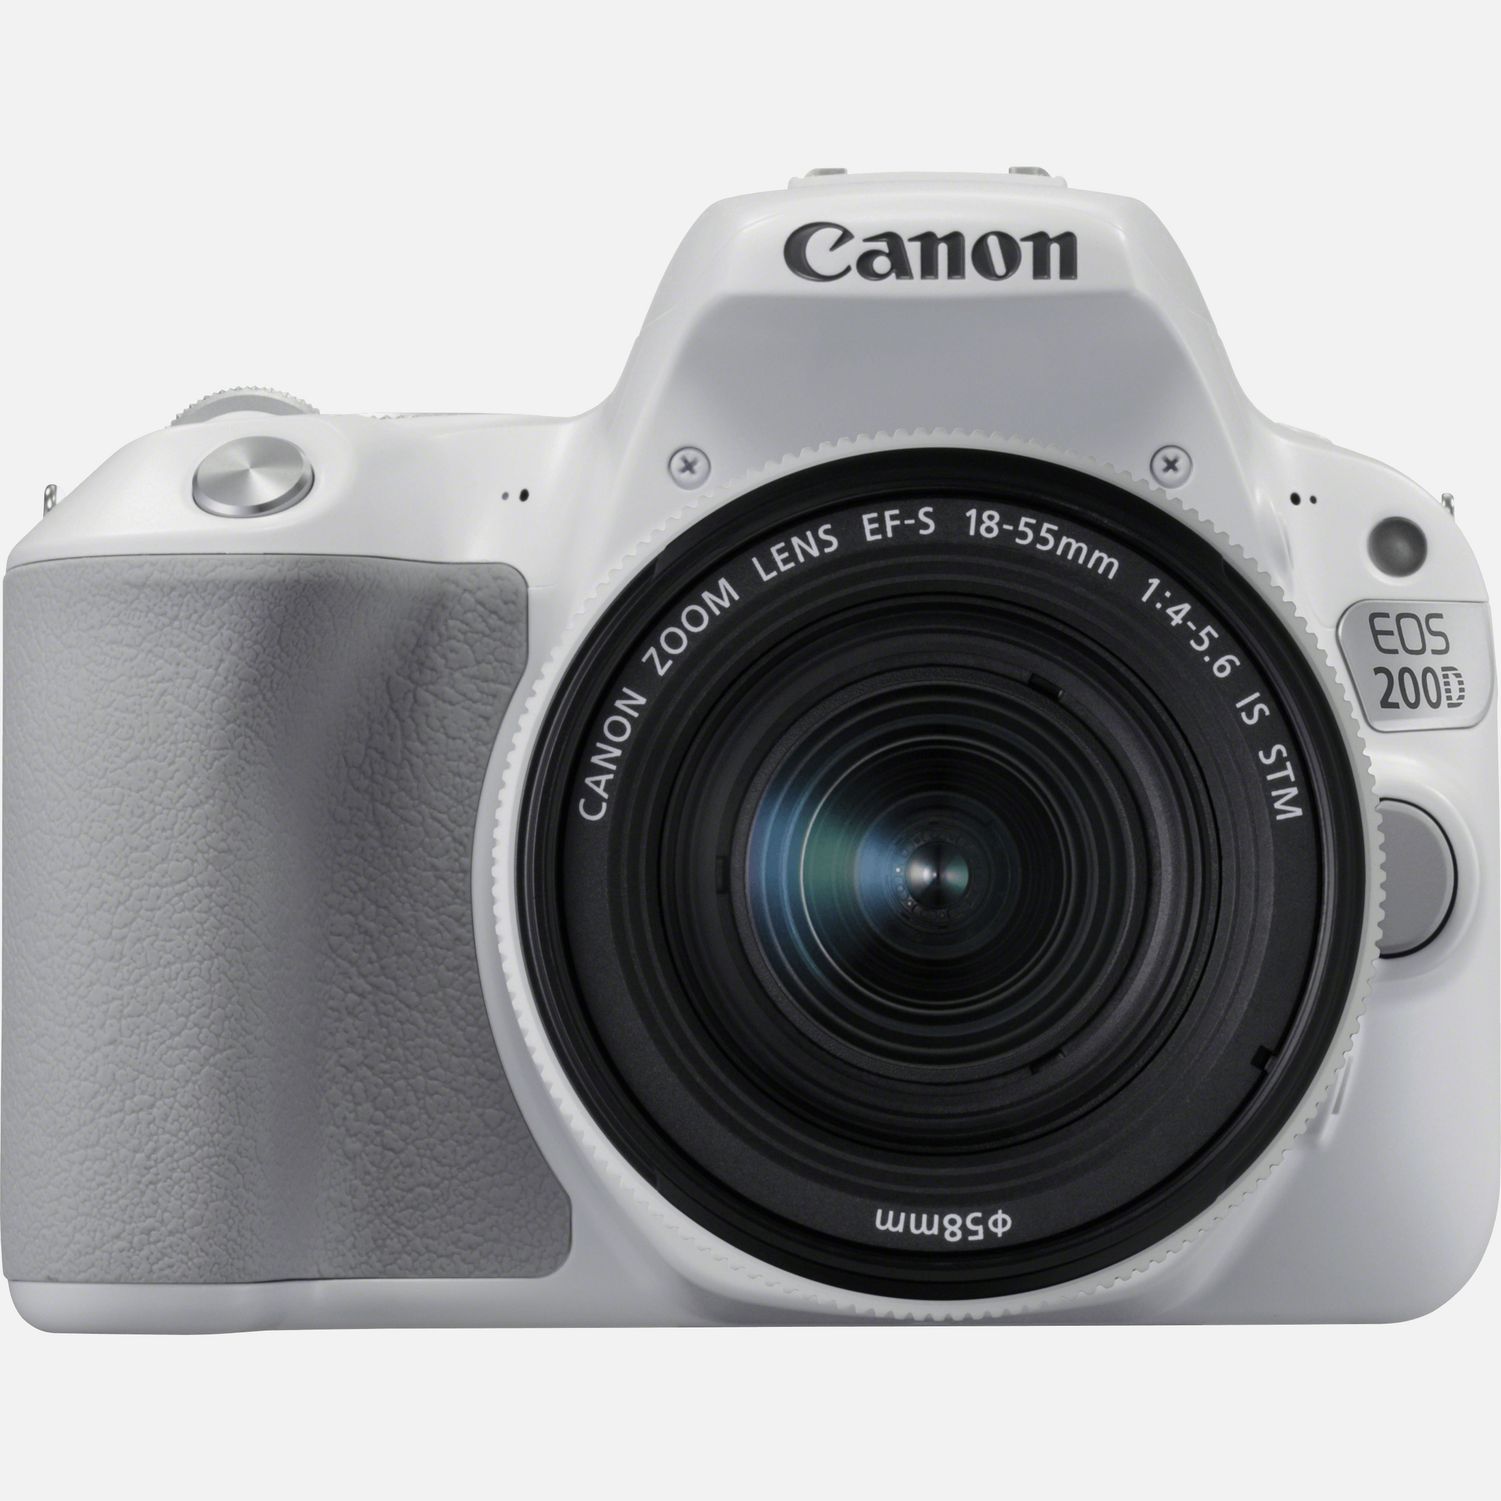 Pareja romántico Pantano Comprar Canon EOS 200D blanca + objetivo EF-S 18-55 mm f/4-5,6 IS STM  blanco en Interrumpido — Tienda Canon Espana